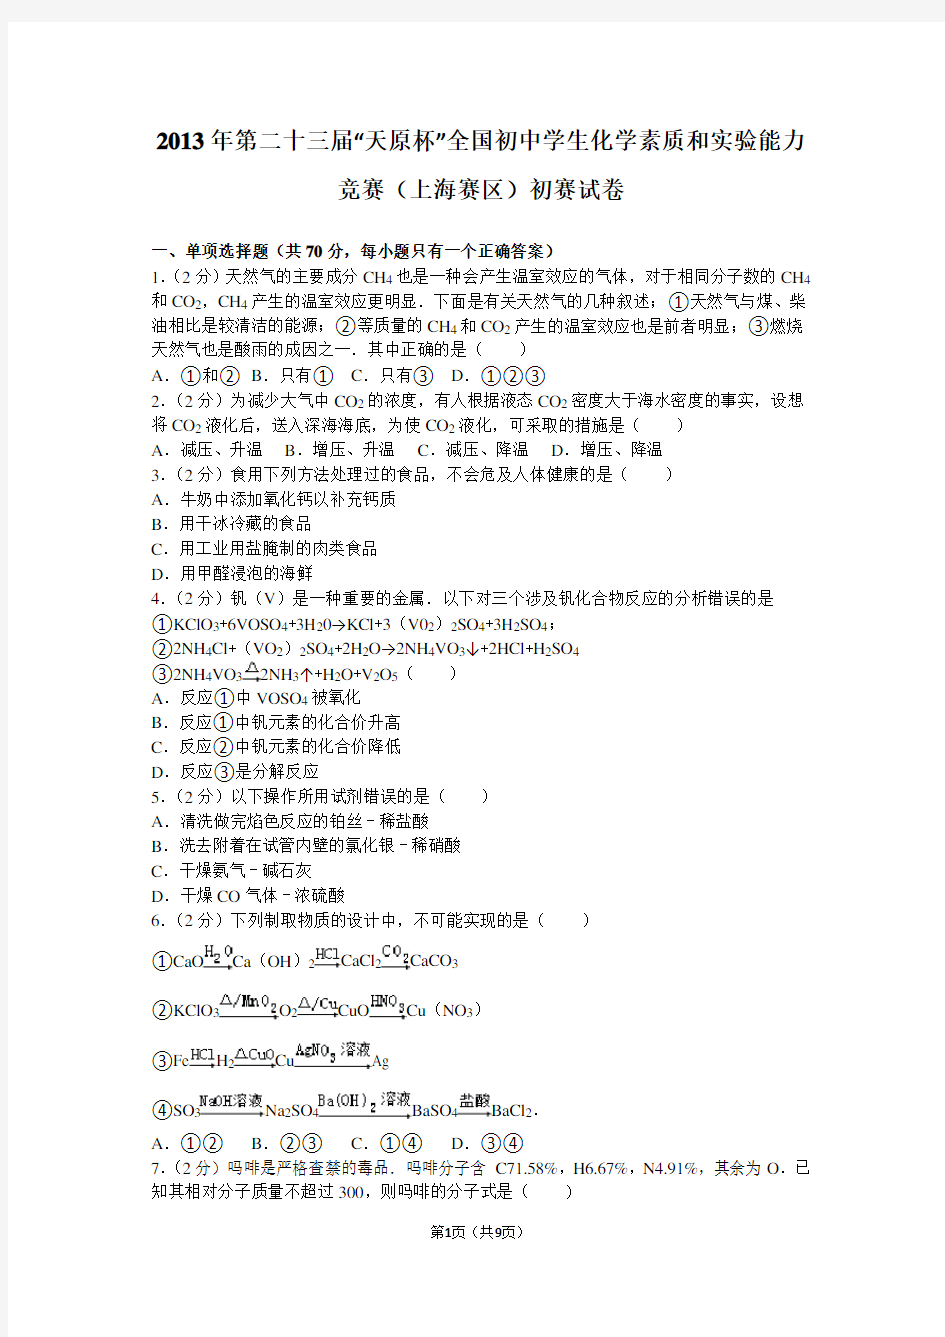 2013年第二十三届“天原杯”全国初中学生化学素质和实验能力竞赛(上海赛区)初赛试卷